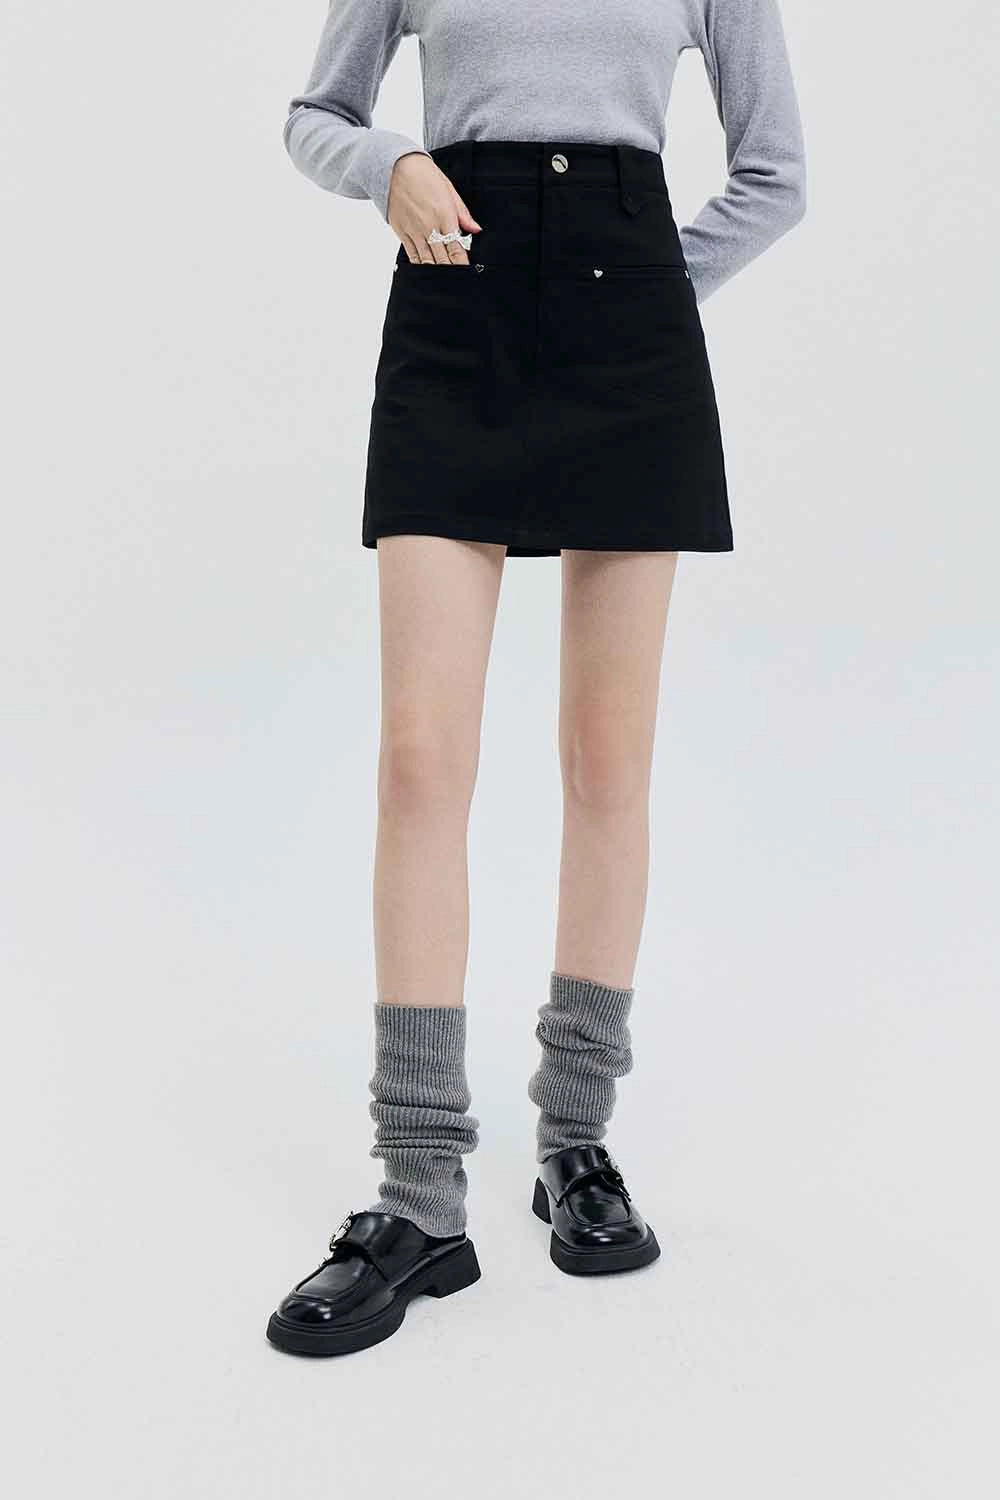 Skirt Mini A-Line Pinggang Tinggi Wanita dengan Perincian Poket